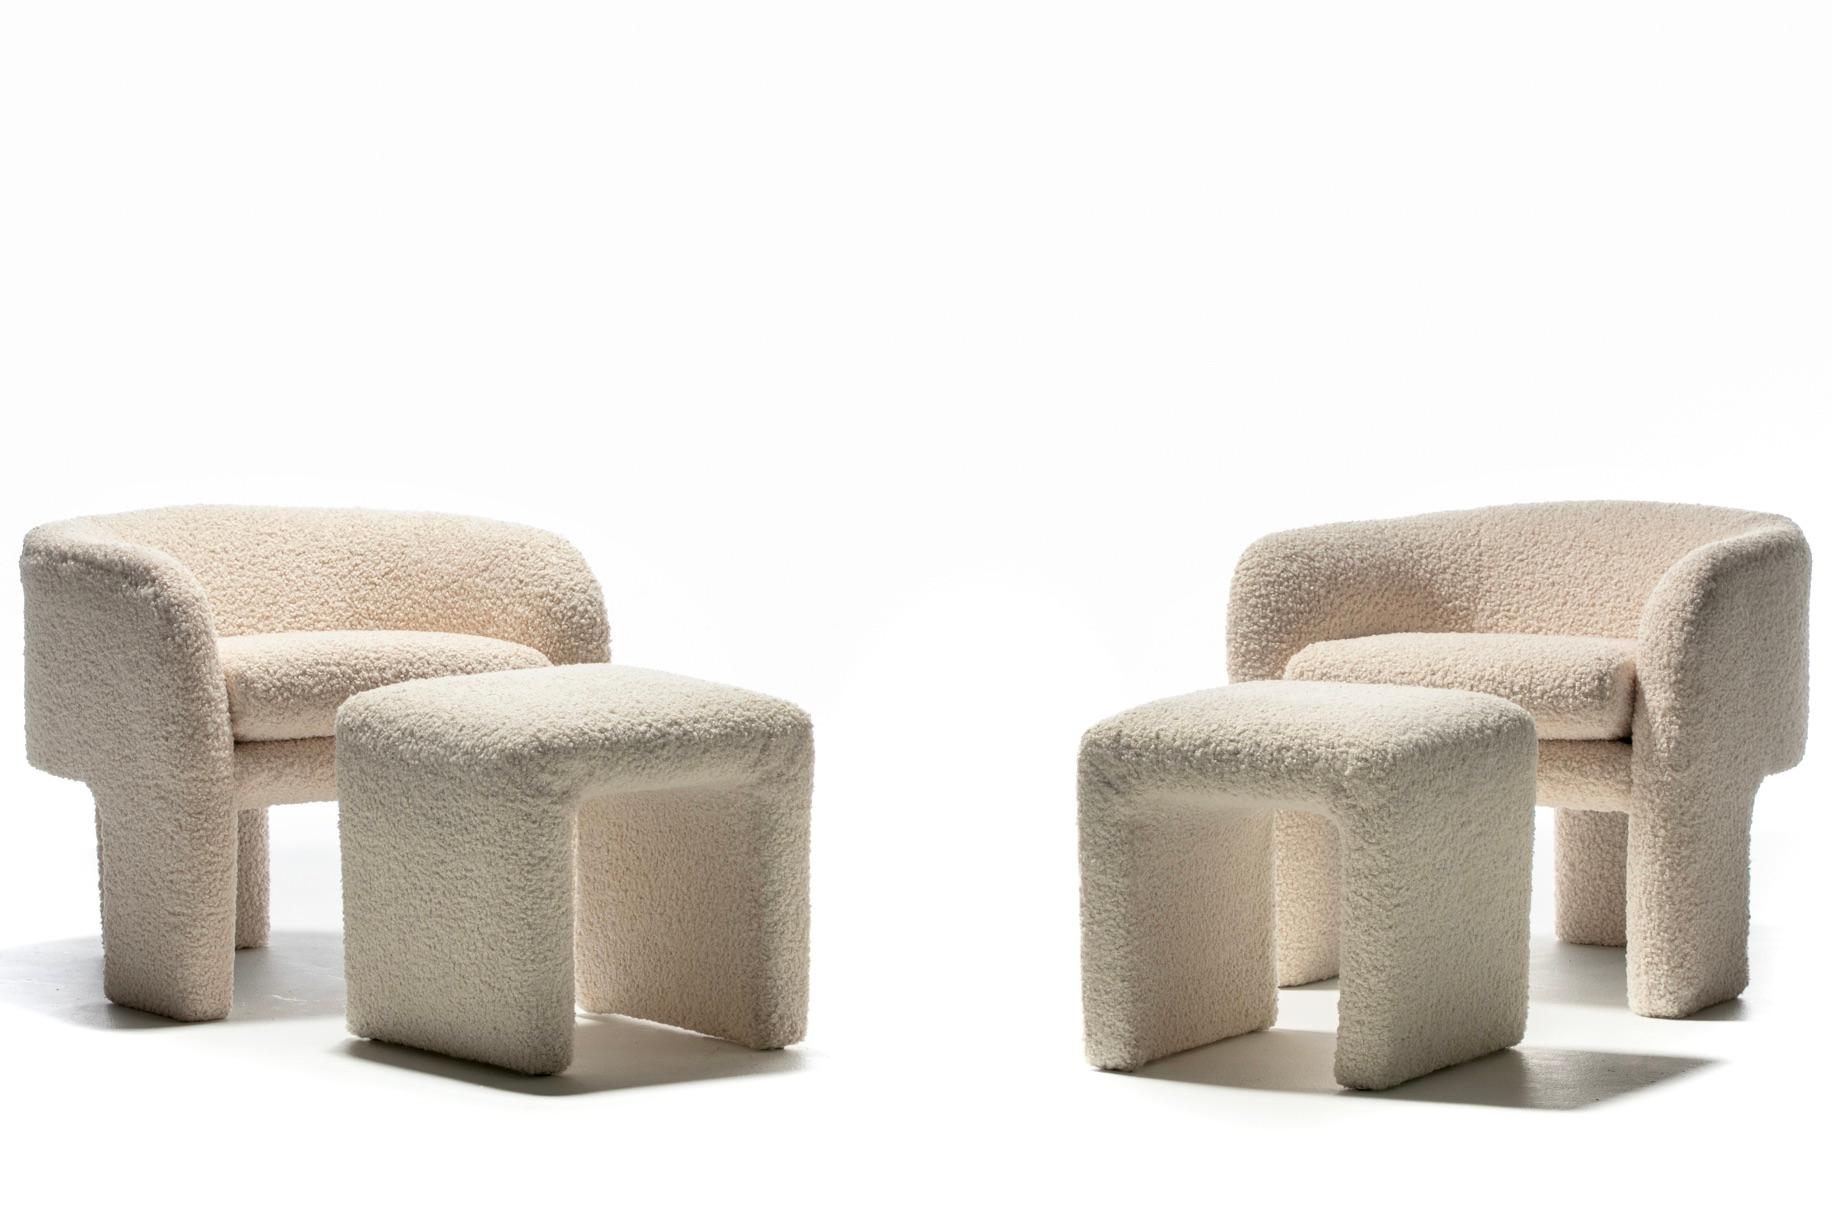 Fin du 20e siècle Paire de fauteuils post-modernes Preview à trois pieds, nouvellement tapissés en ivoire boucl  en vente